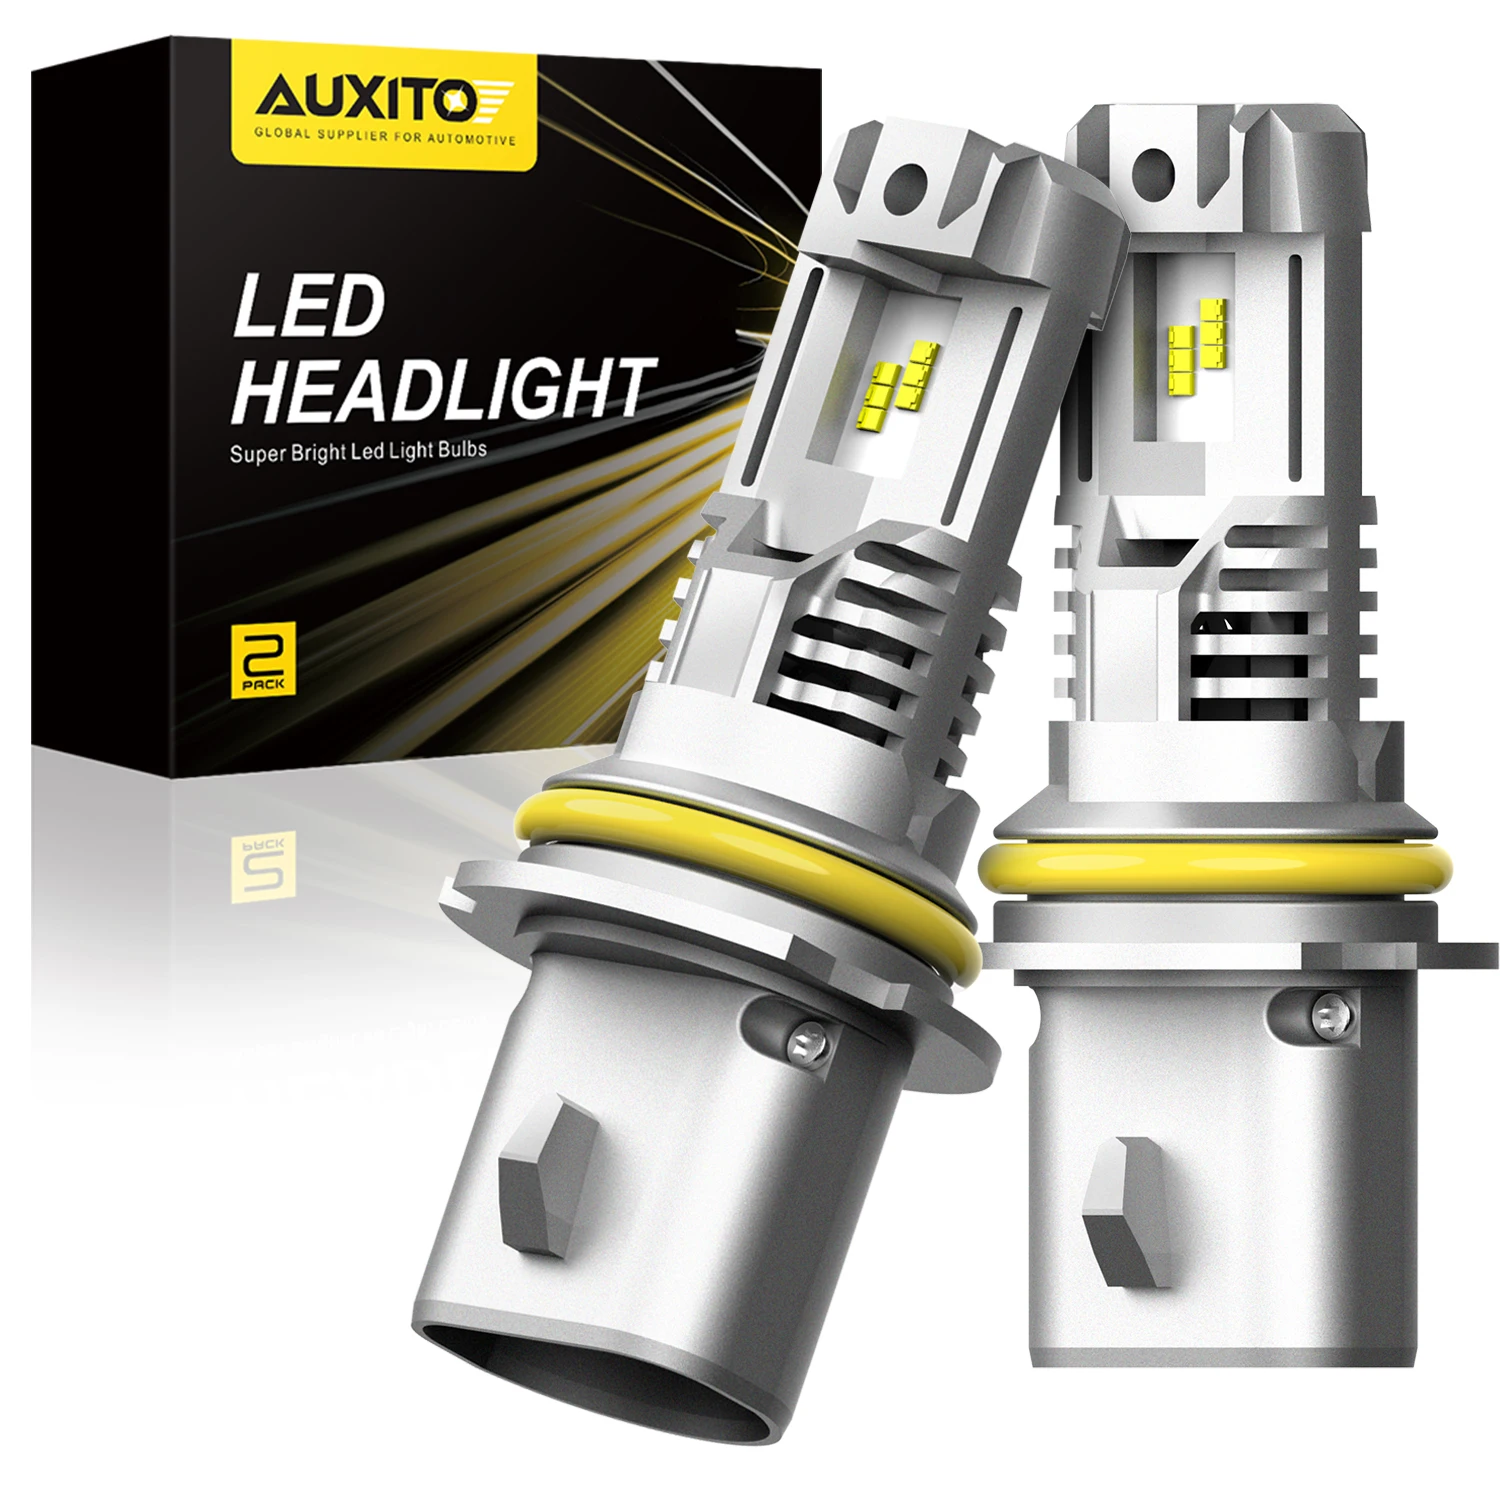 Автомобильные светодиодные лампы AUXITO HB5 9007 2 шт. 9005 лм | Автомобили и мотоциклы